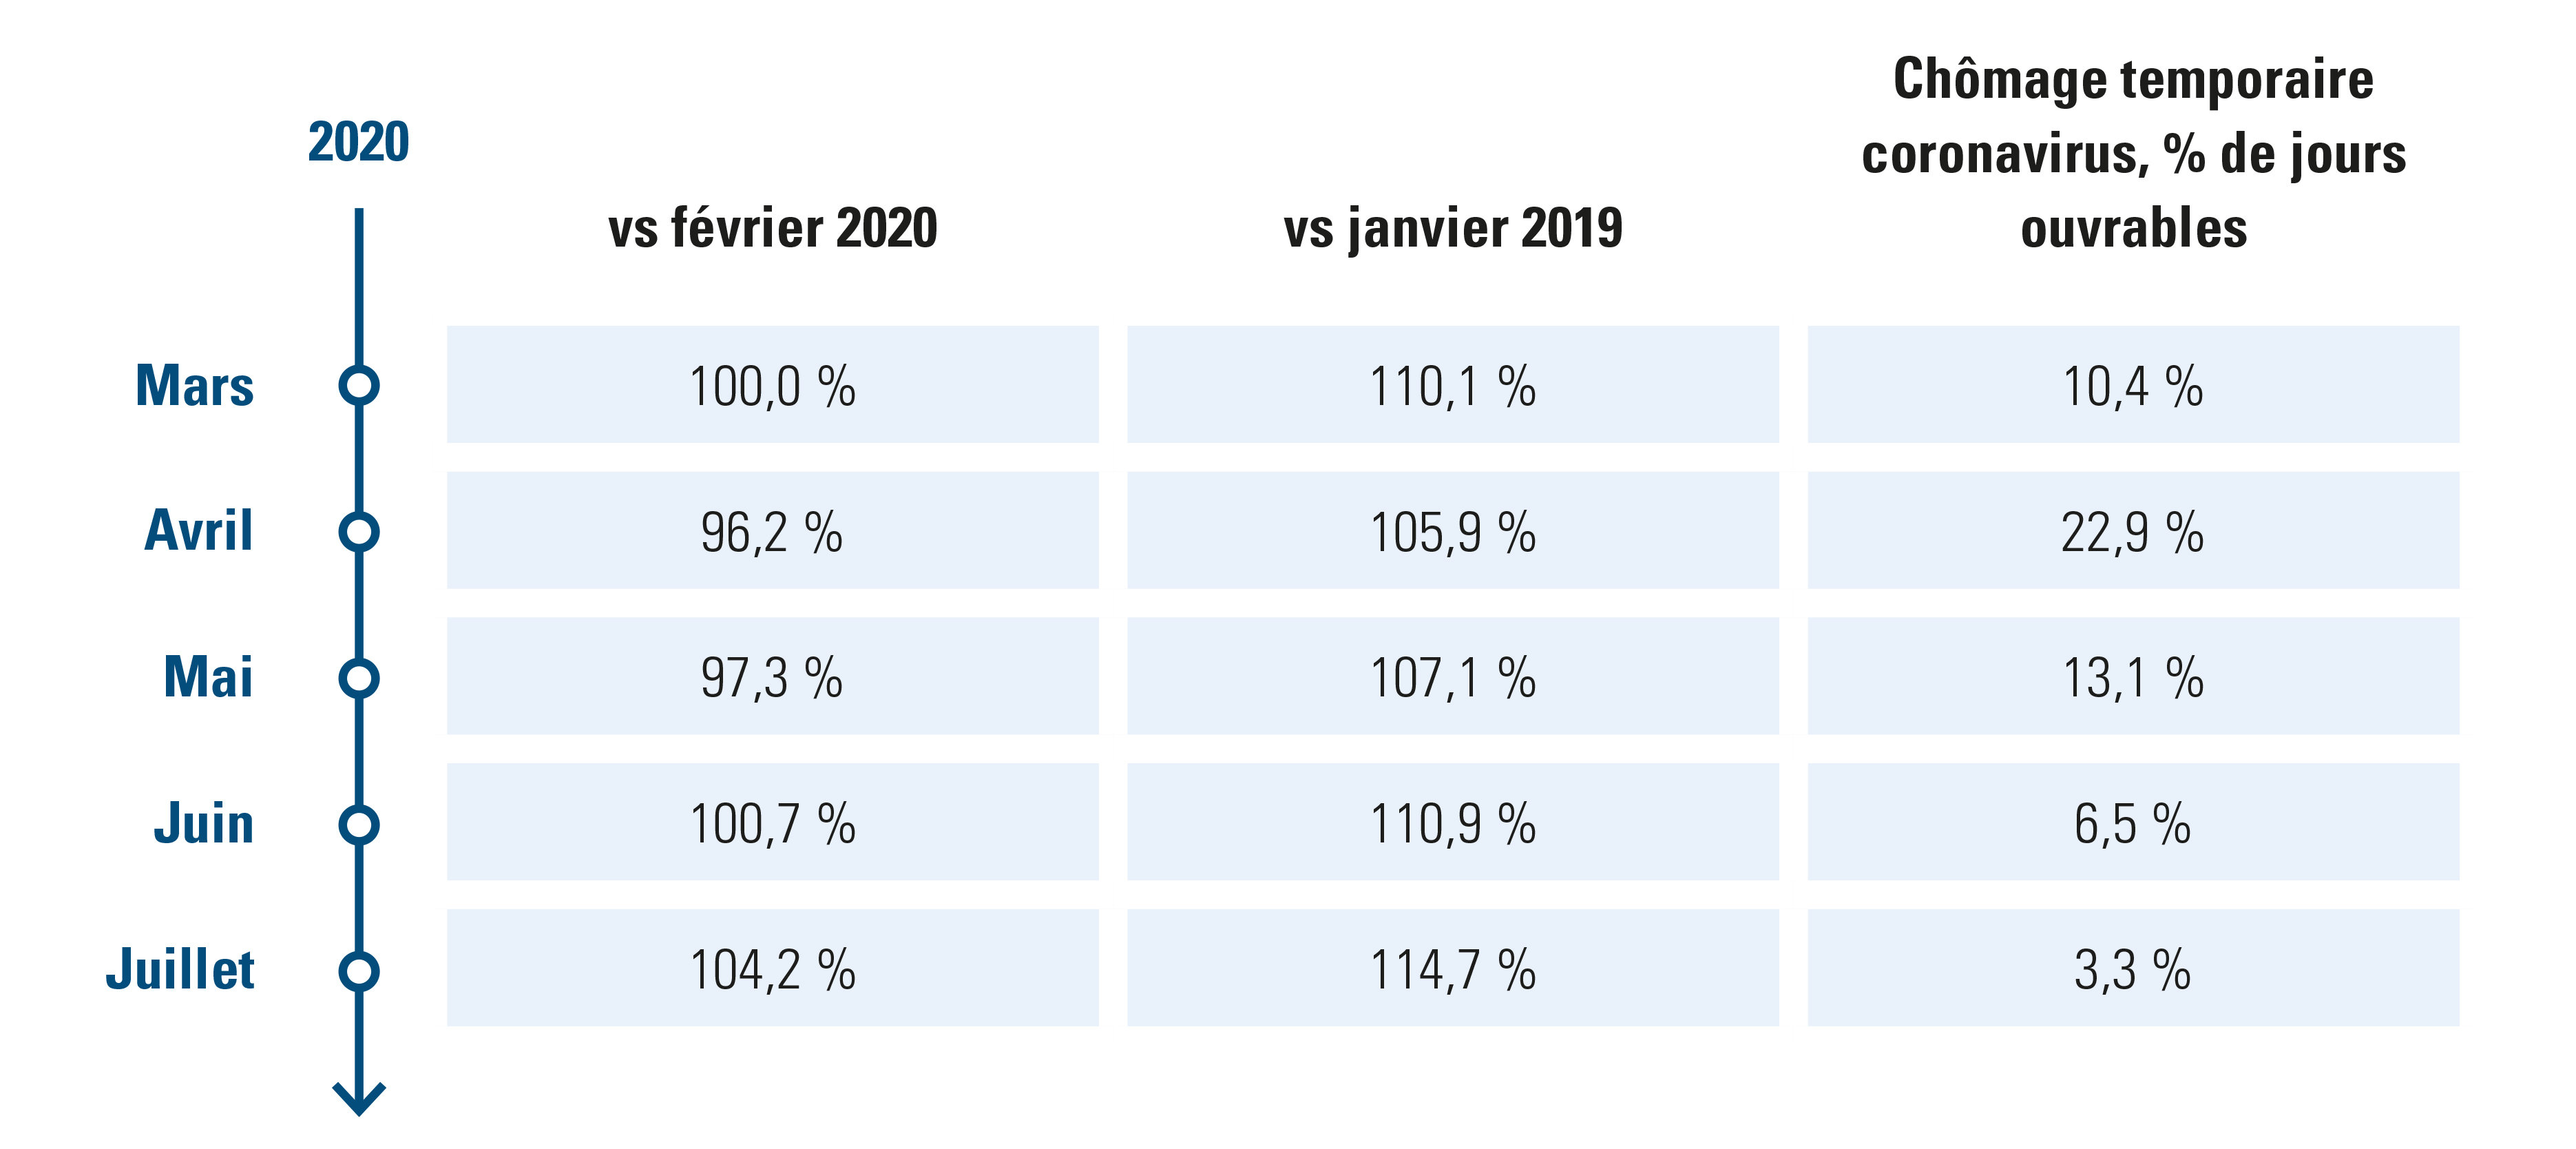 l'emploi 2019 versus 2020 versus chômage temporaire_acerta